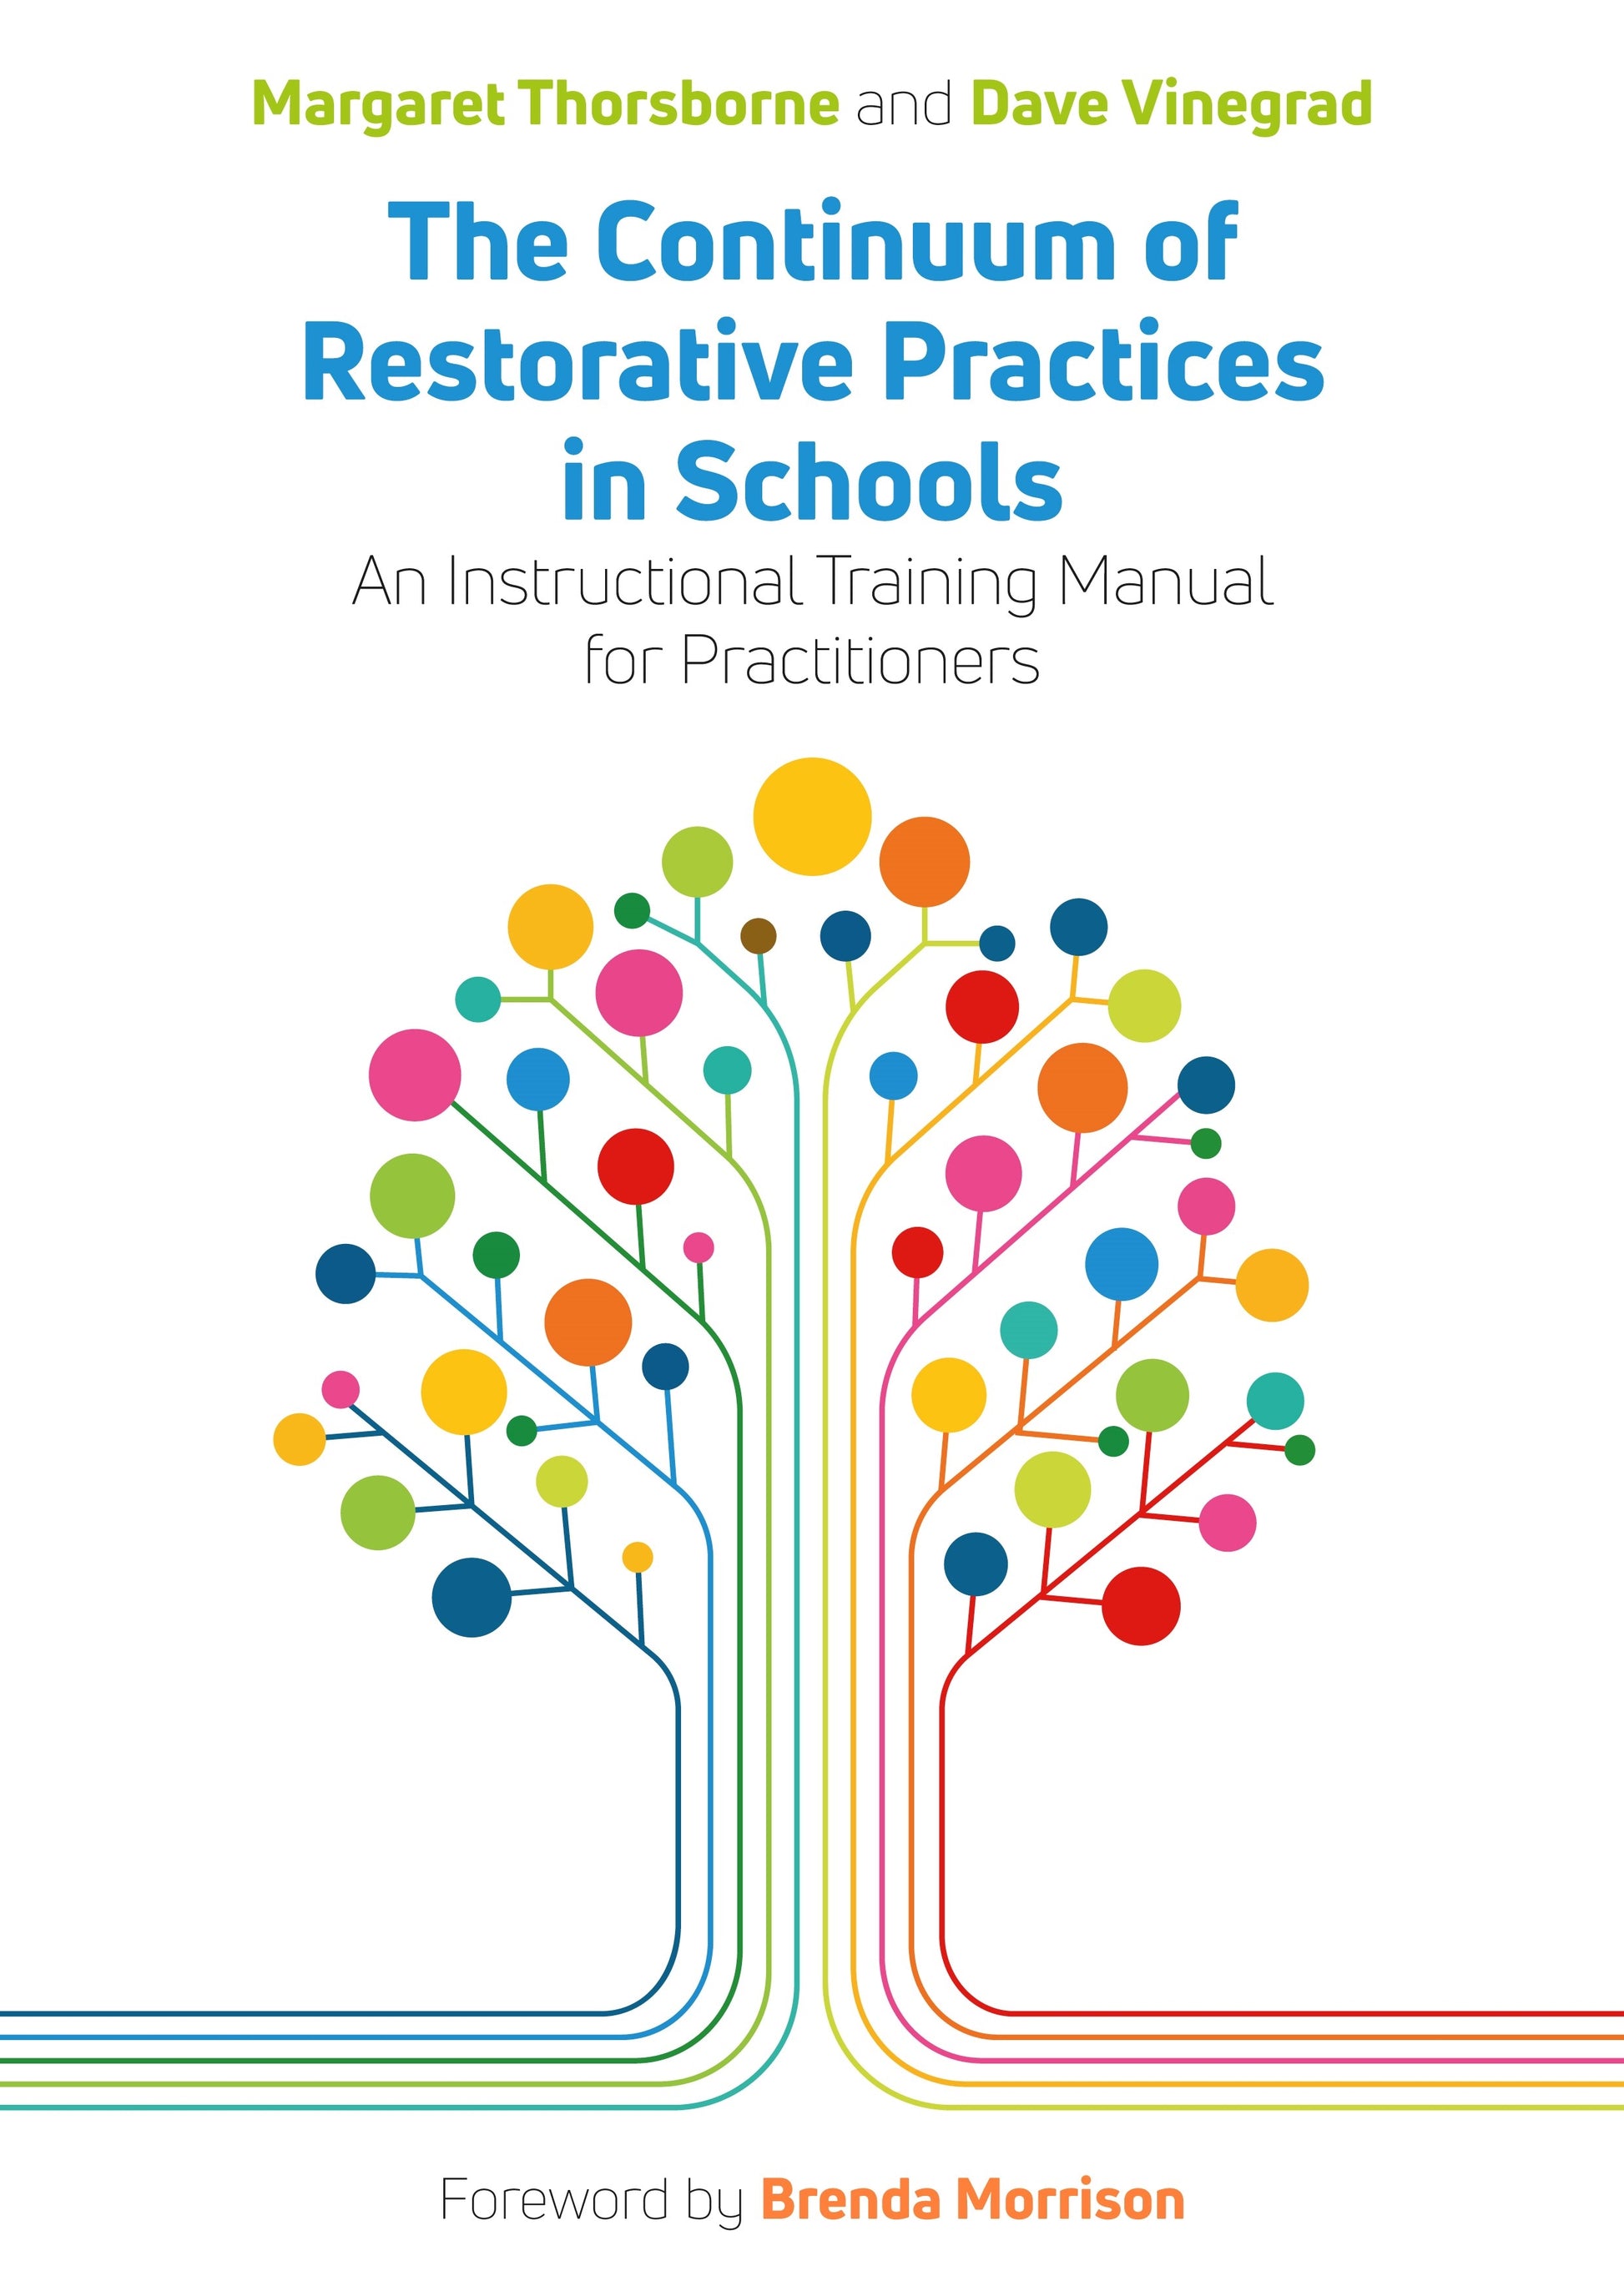 The Continuum of Restorative Practices in Schools by Margaret Thorsborne, Dave Vinegrad